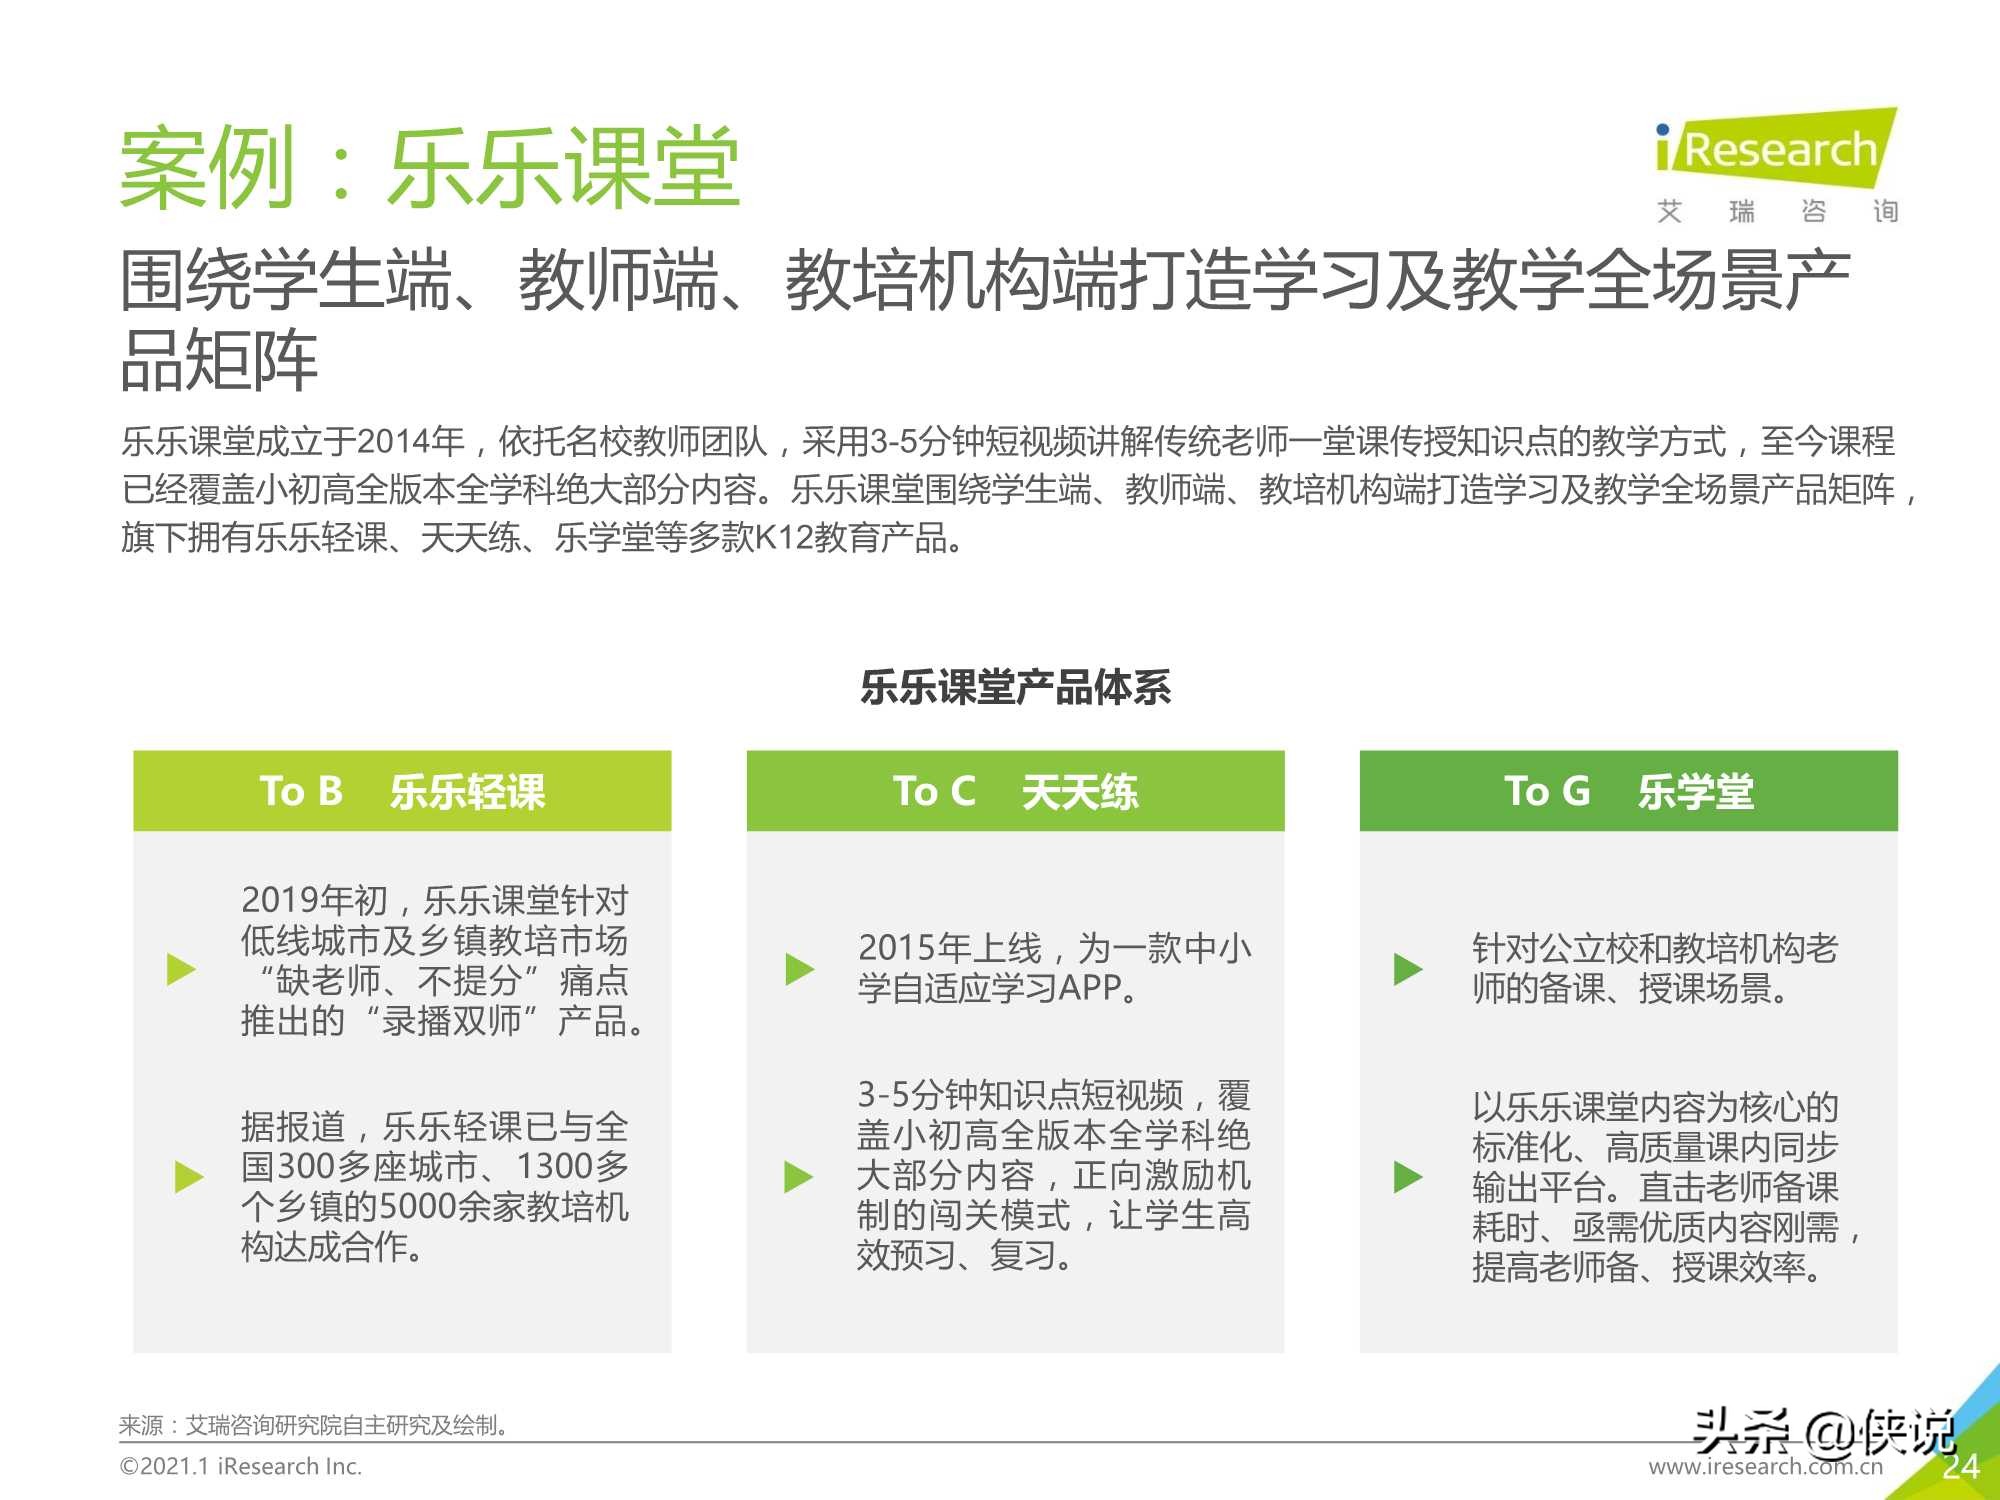 2020年中国在线教育行业研究报告